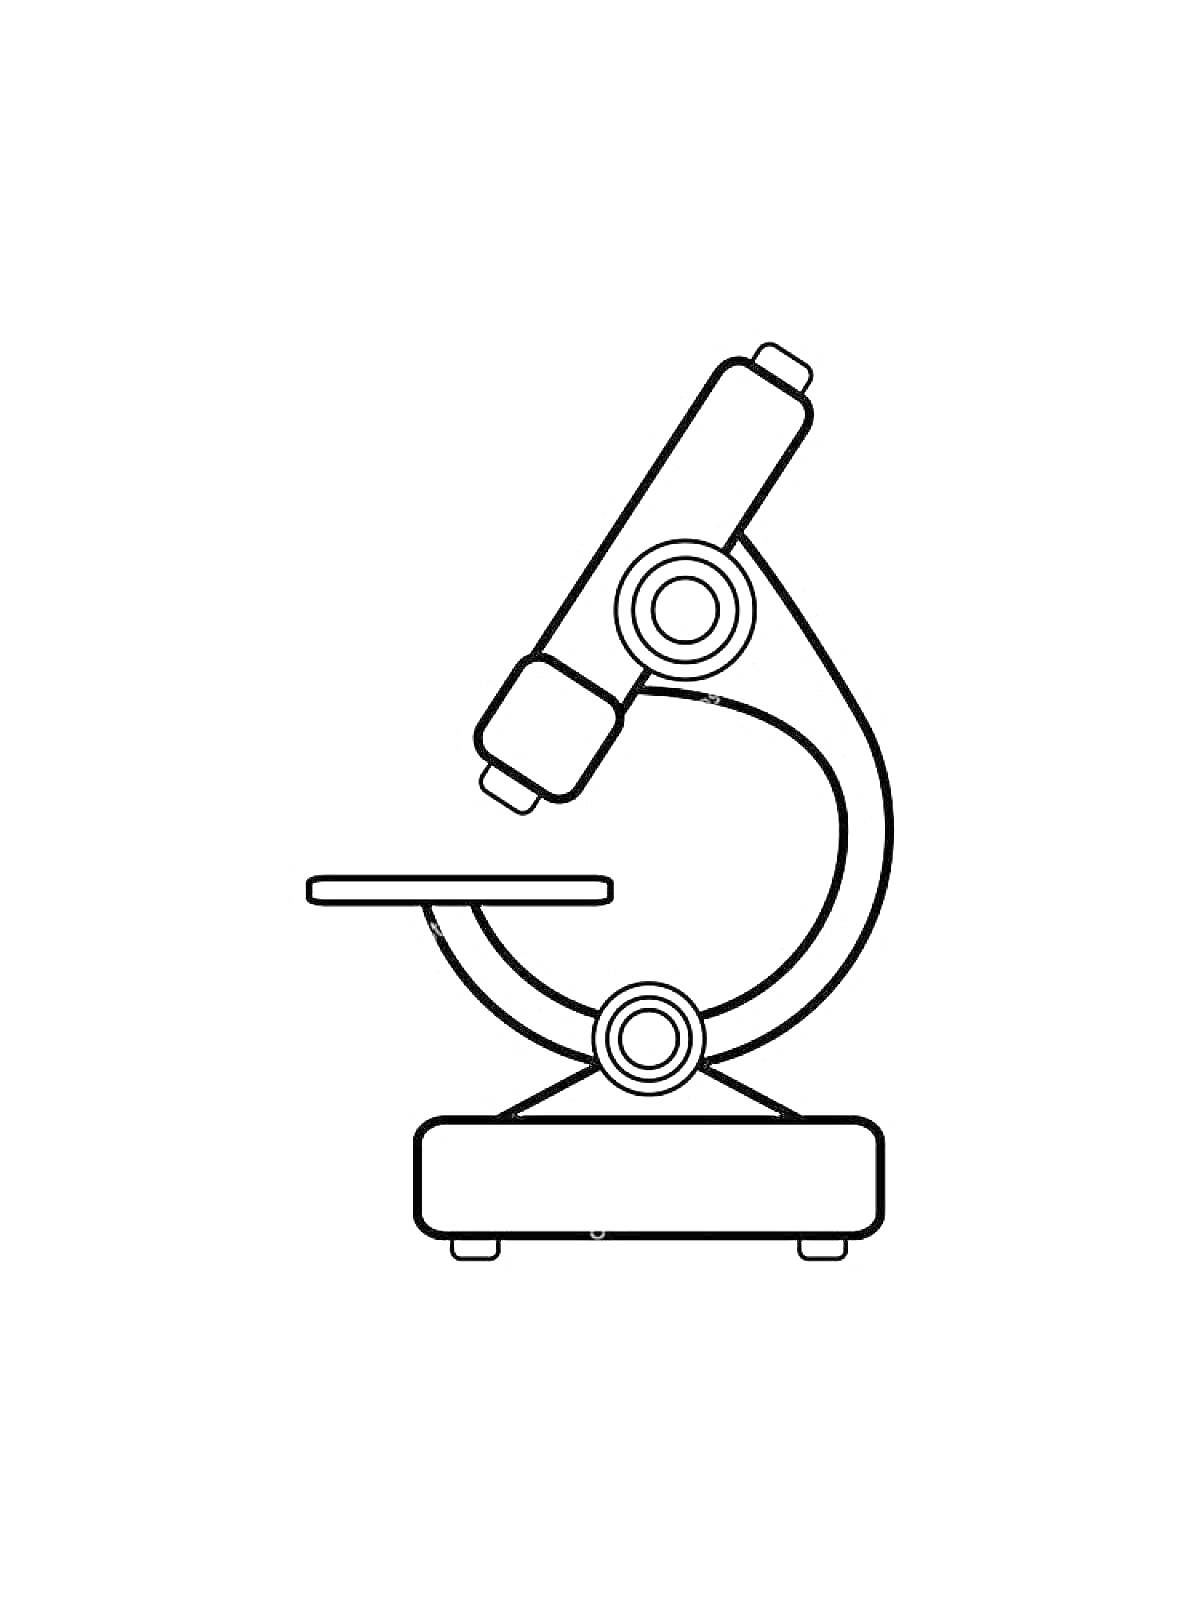 Раскраска Микроскоп с окуляром, тубусом, предметным столиком, основанием и фокусировочным винтом на четырёх ножках